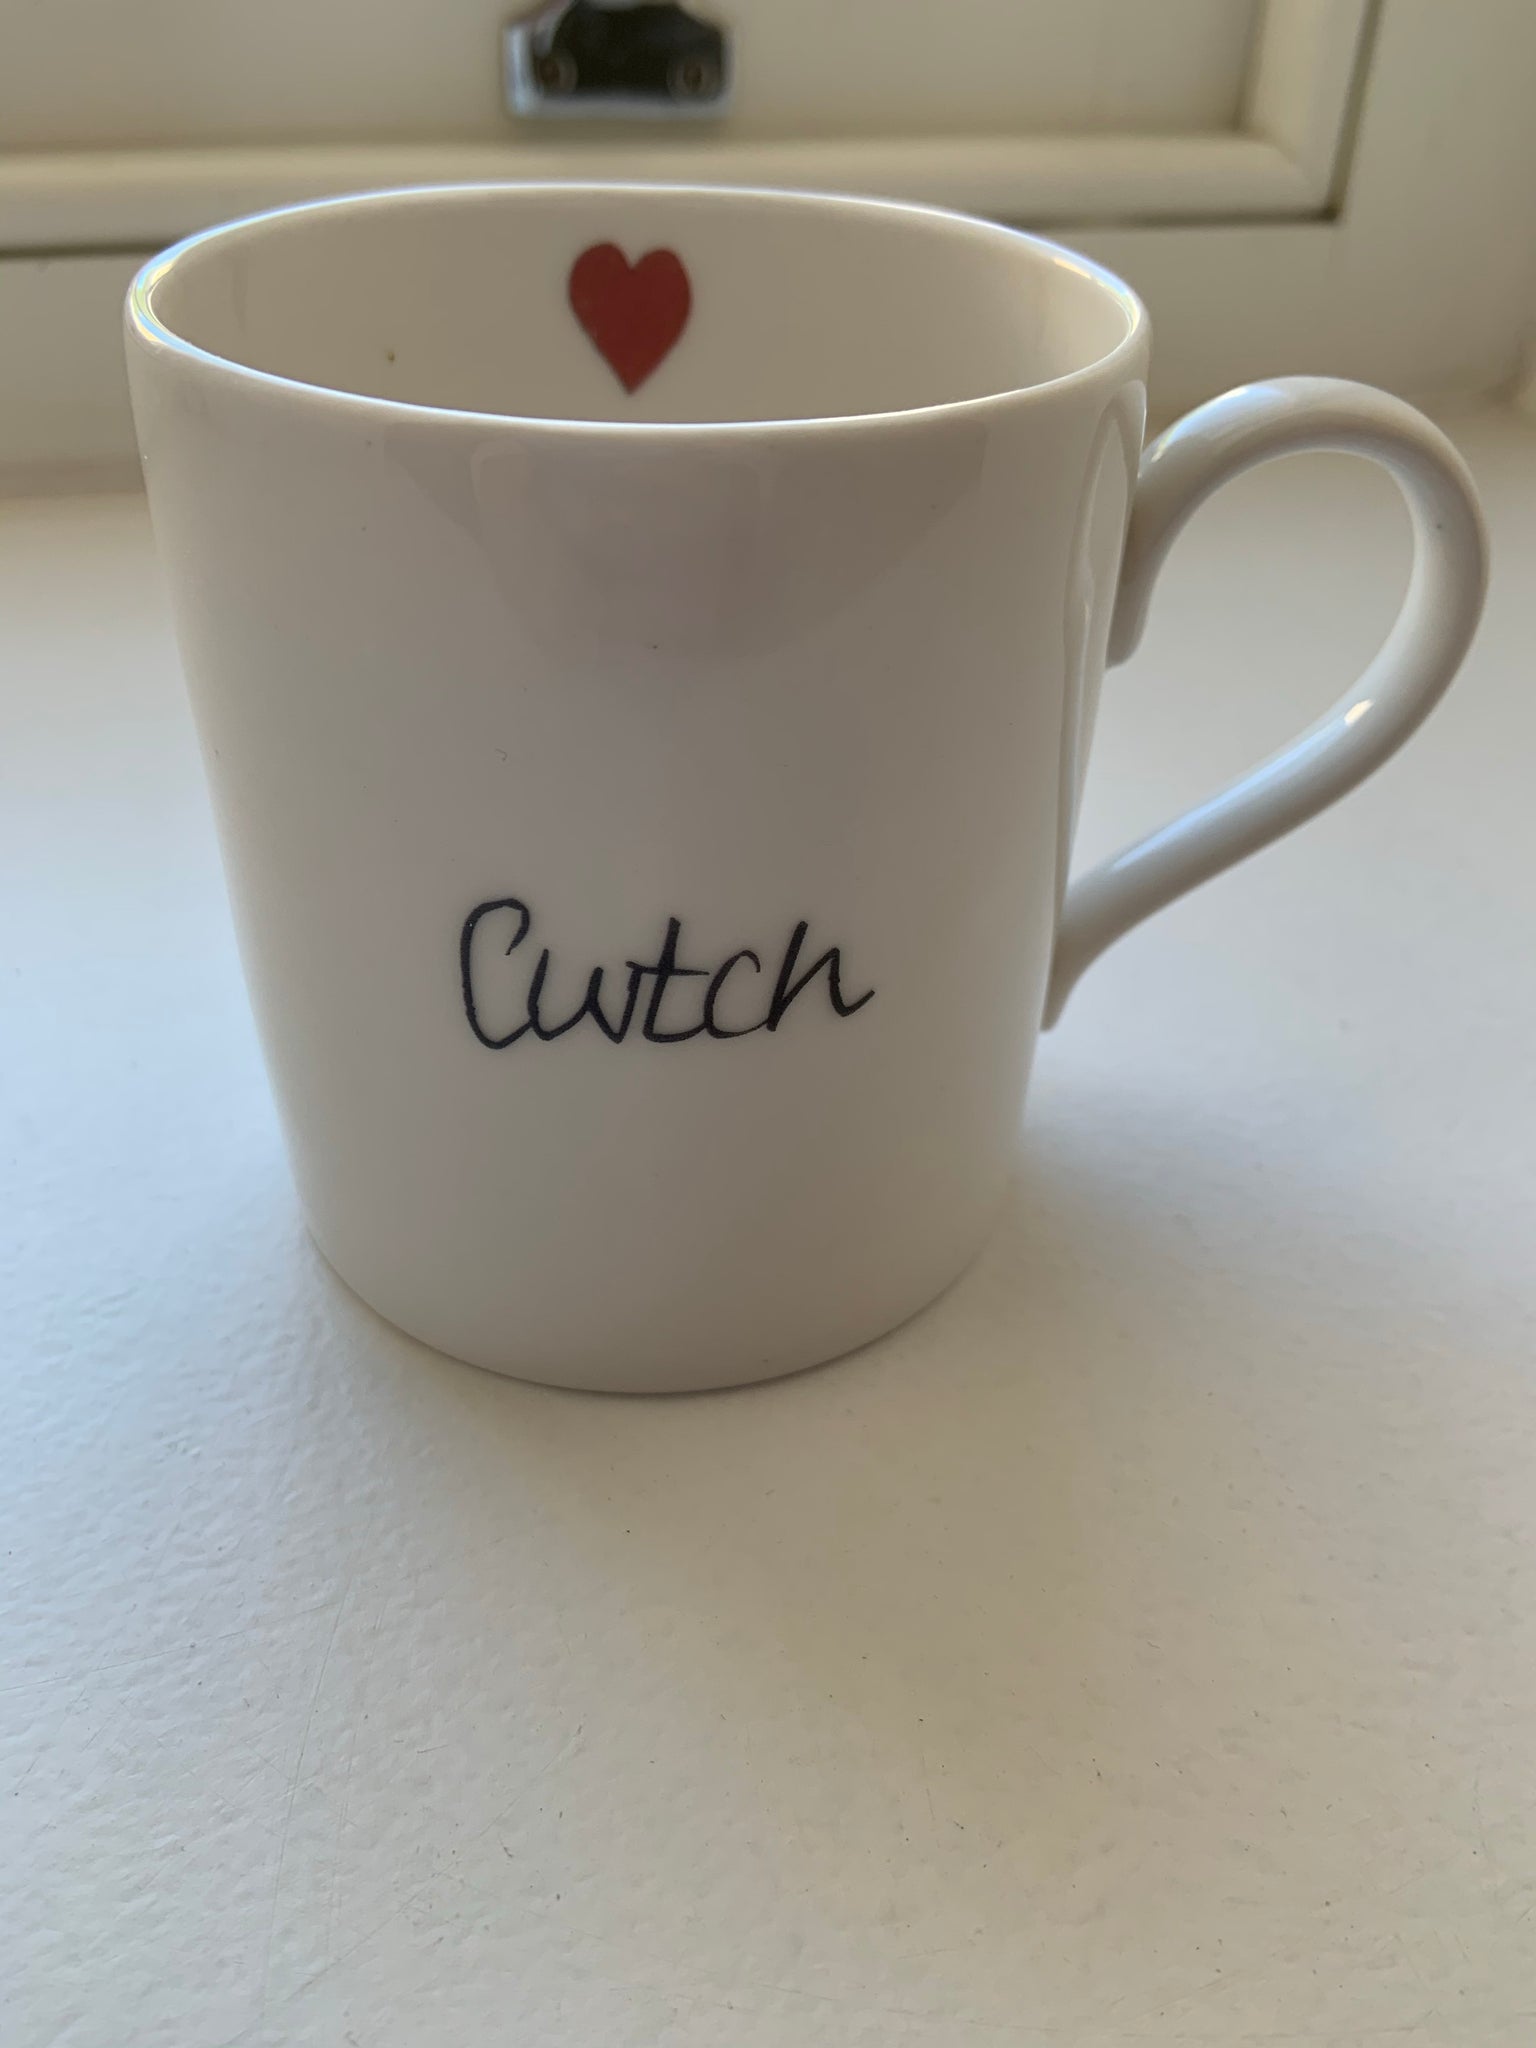 Welsh Mug - Cwtch